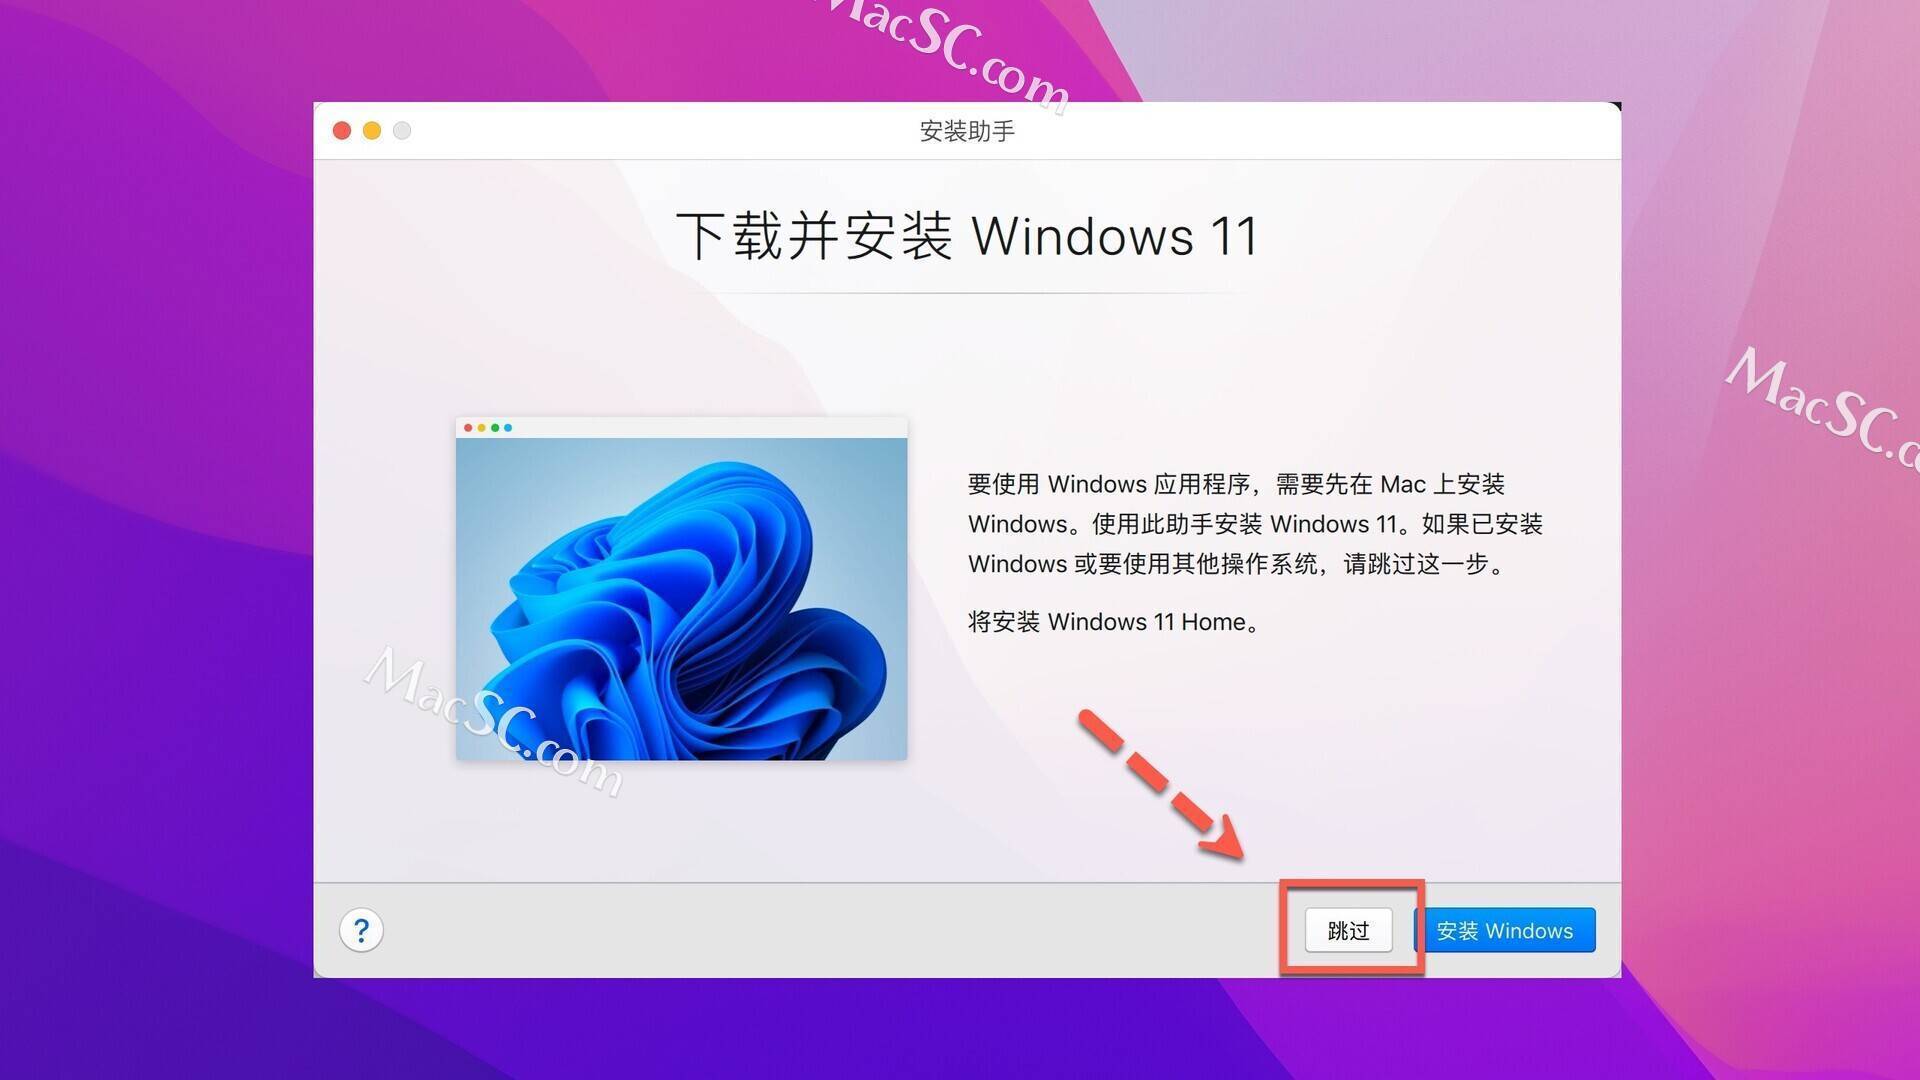 苹果电脑双系统安装必备Parallels Desktop 18 永久版